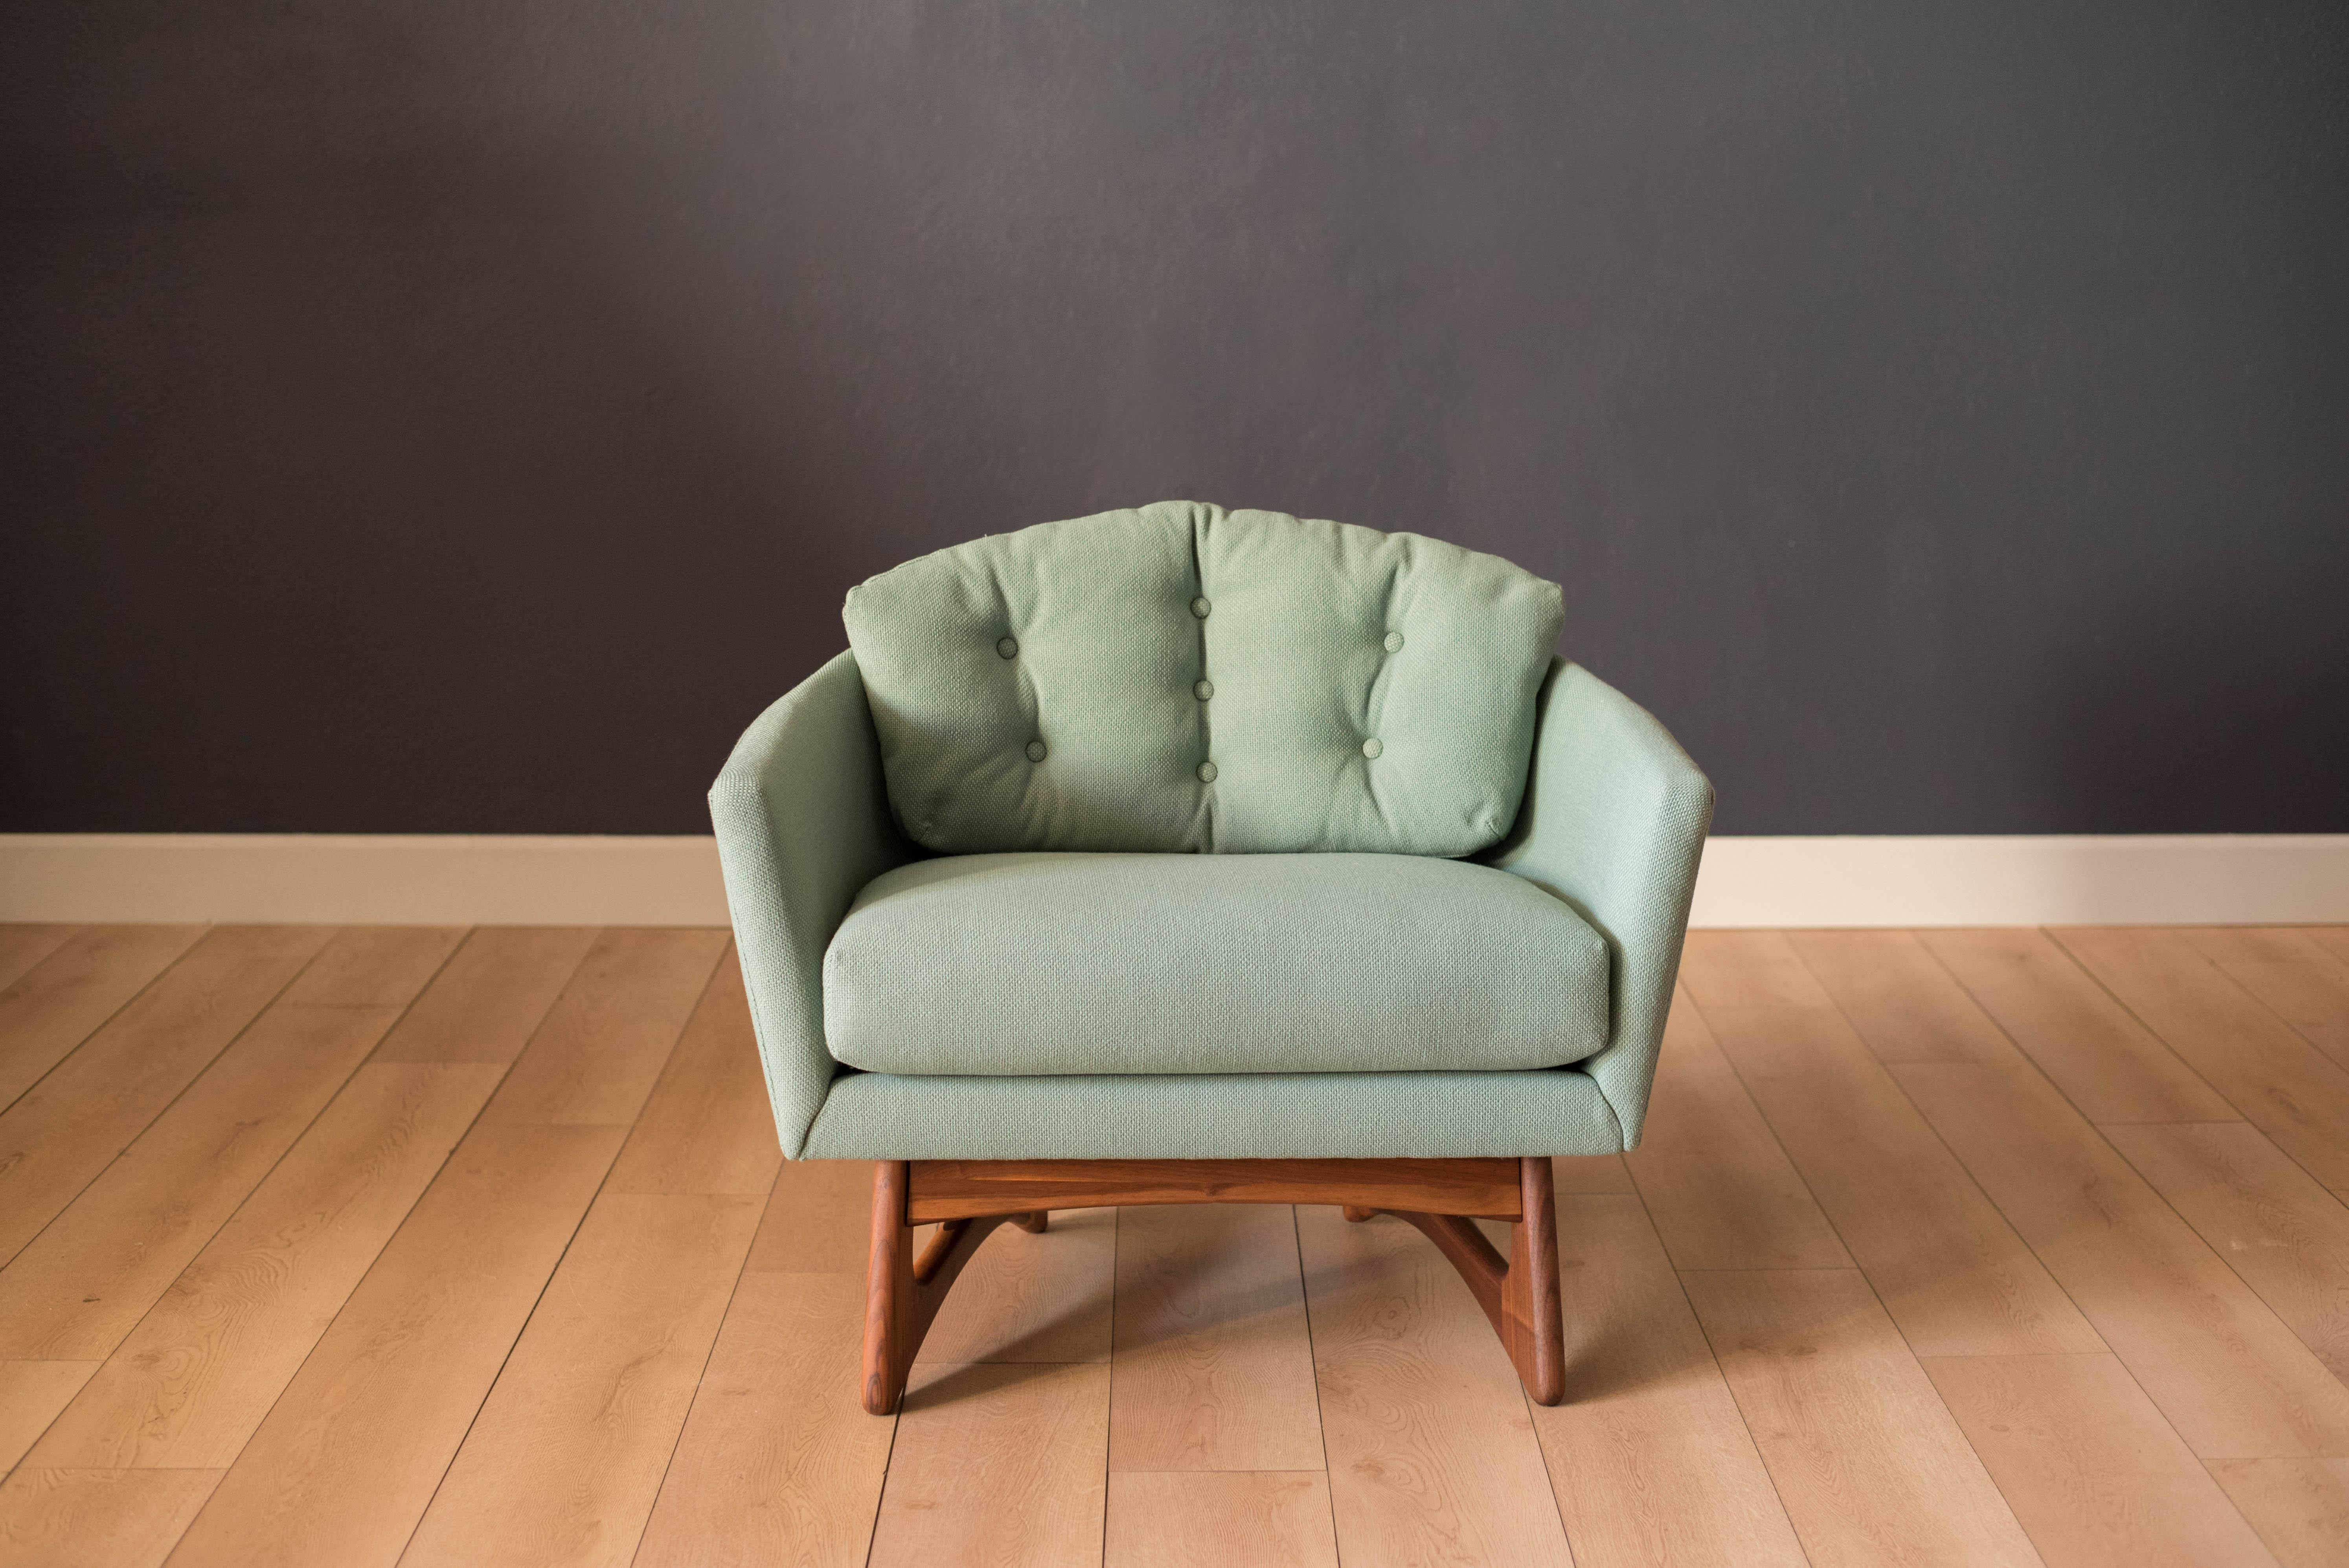 Vintage Barrel Club Chair:: entworfen von Adrian Pearsall für Craft Associates. Dieser Loungesessel hat einen skulpturalen Sockel aus Nussbaumholz und wurde neu mit einem alten:: nicht mehr erhältlichen meerschaumgrünen Tweed gepolstert.